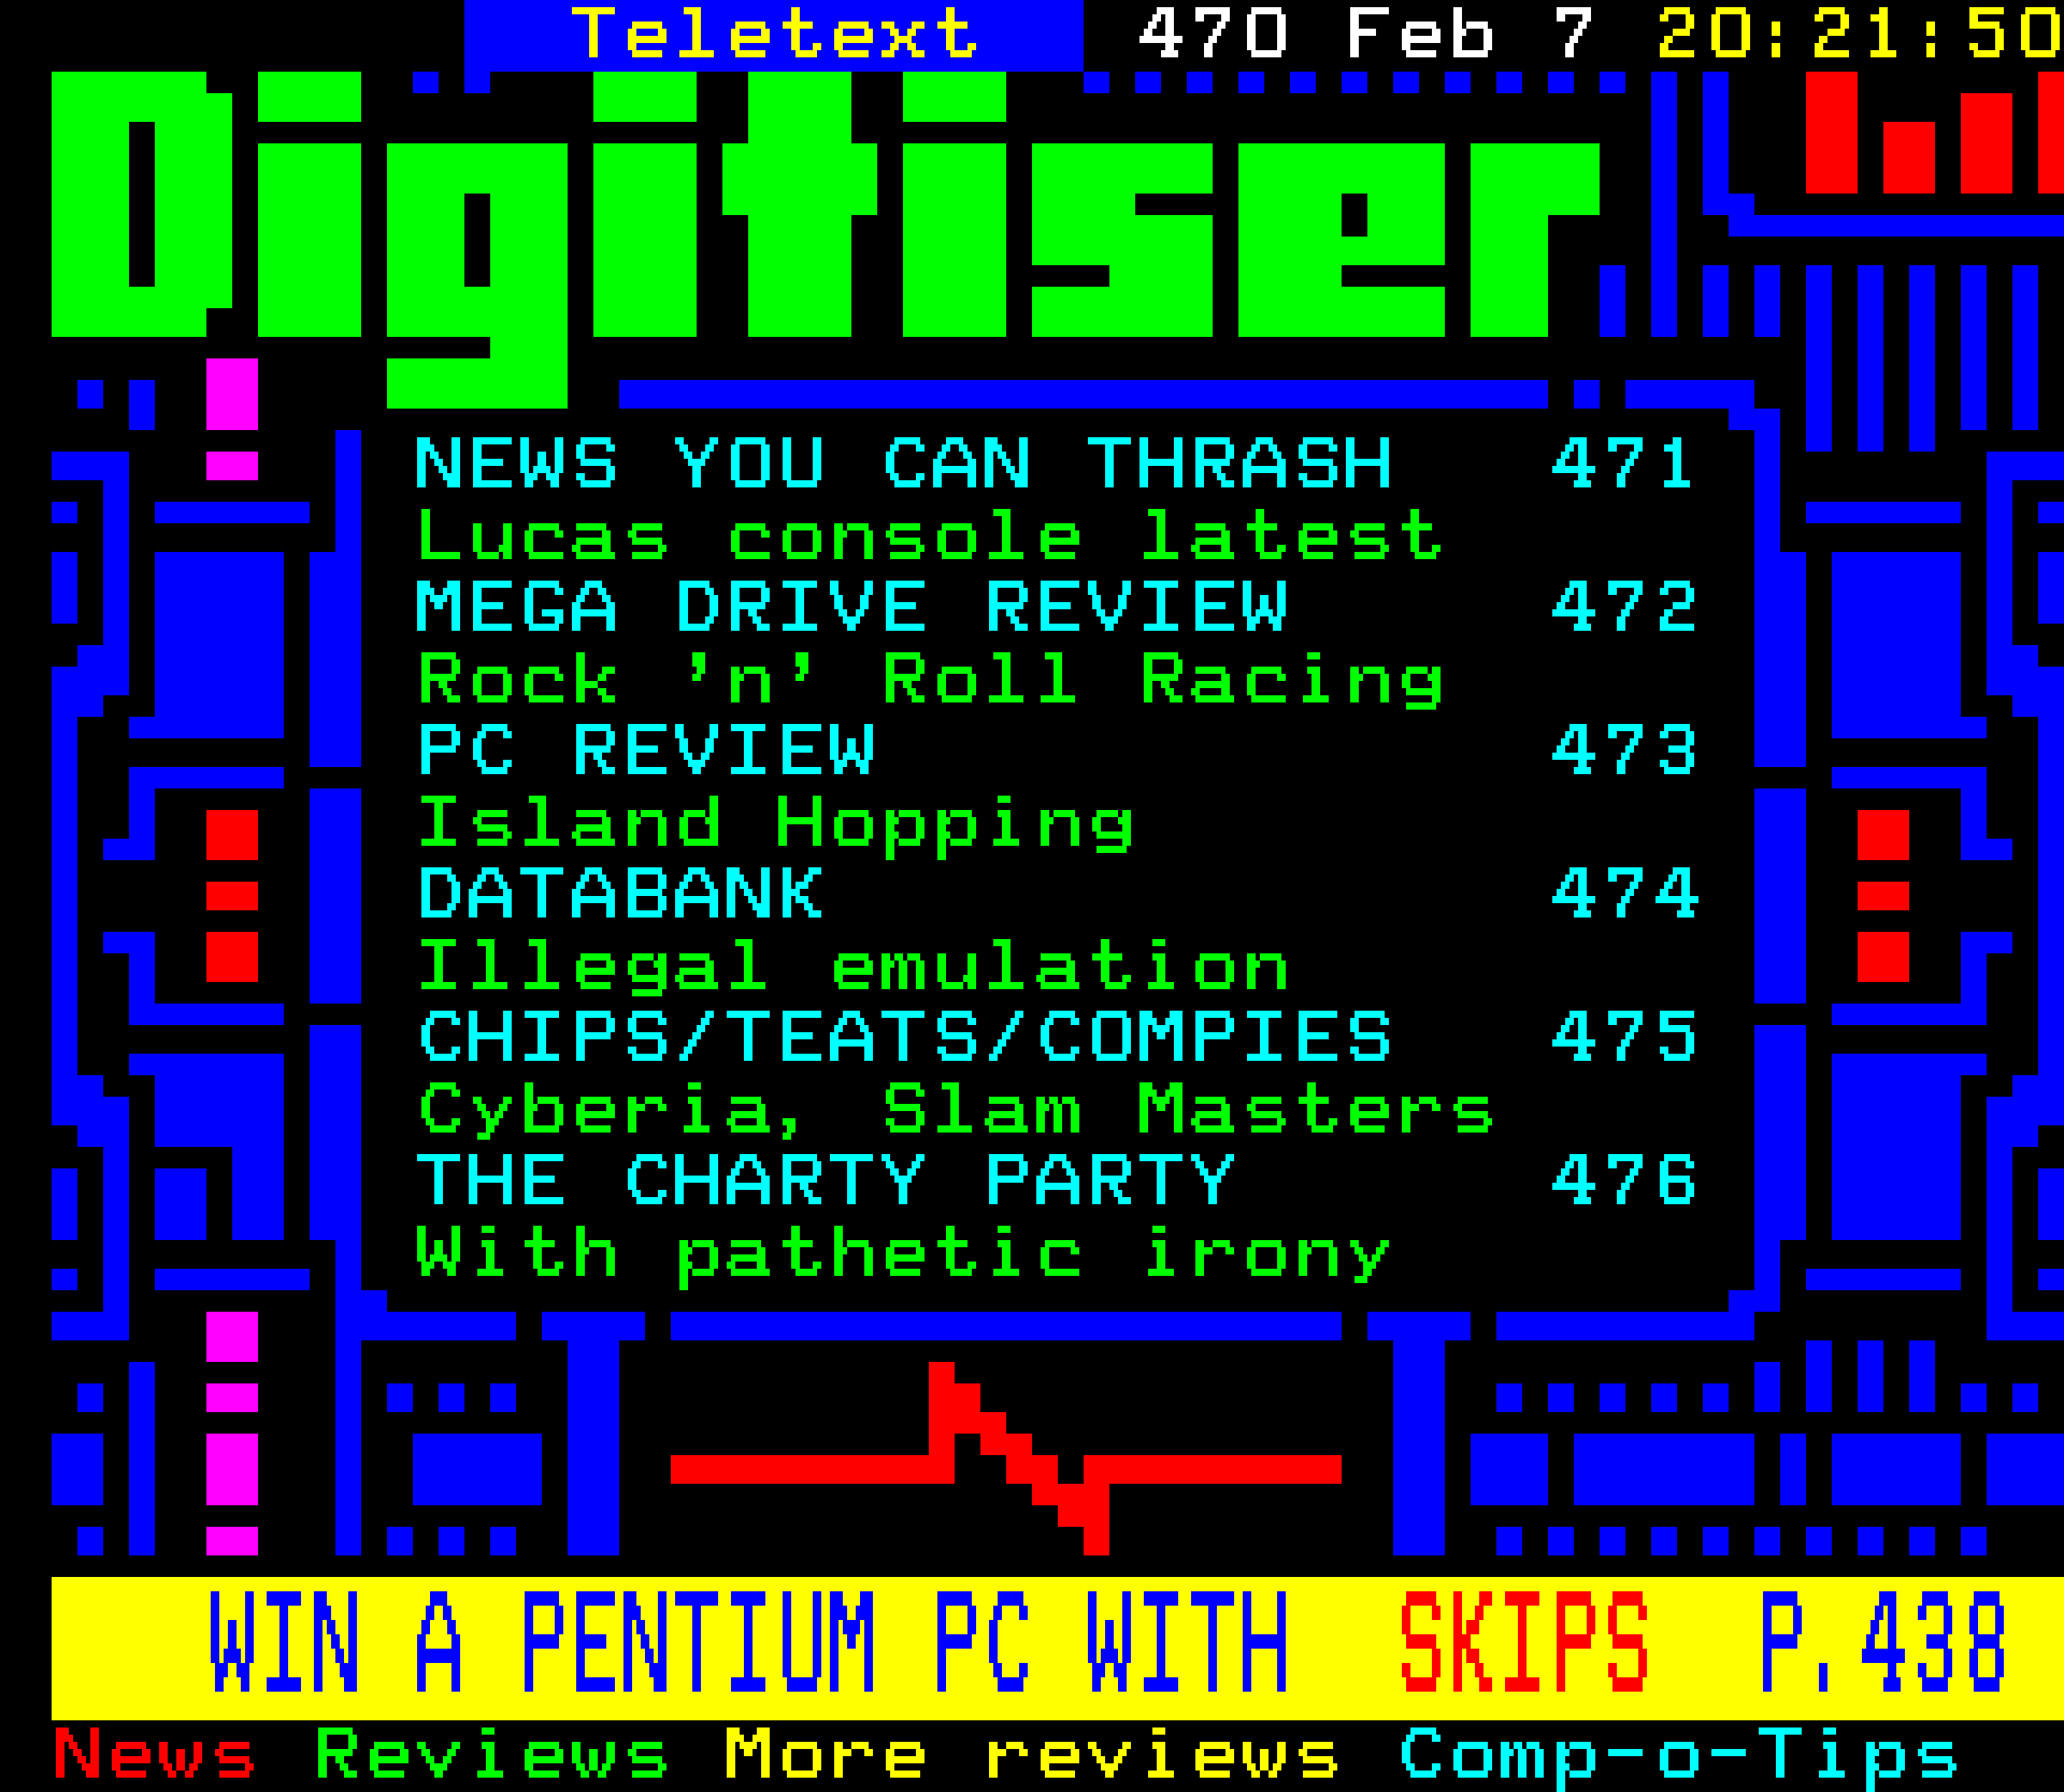 Digitiser, Teletext - 1995